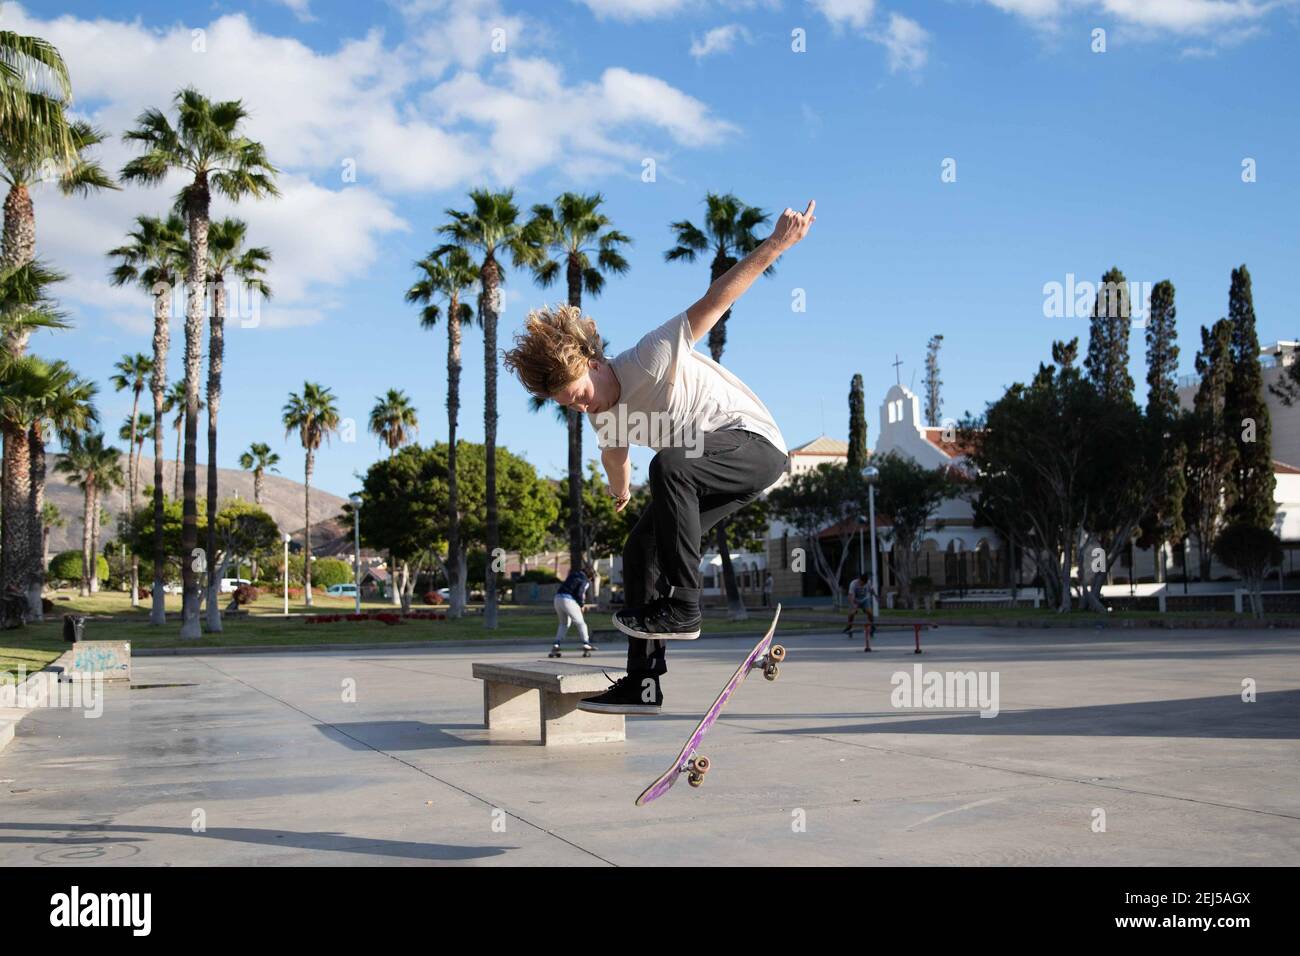 Skater führen einen Kickflip während der Fahrt mit seinem Skateboard an der Skatepark Stockfoto